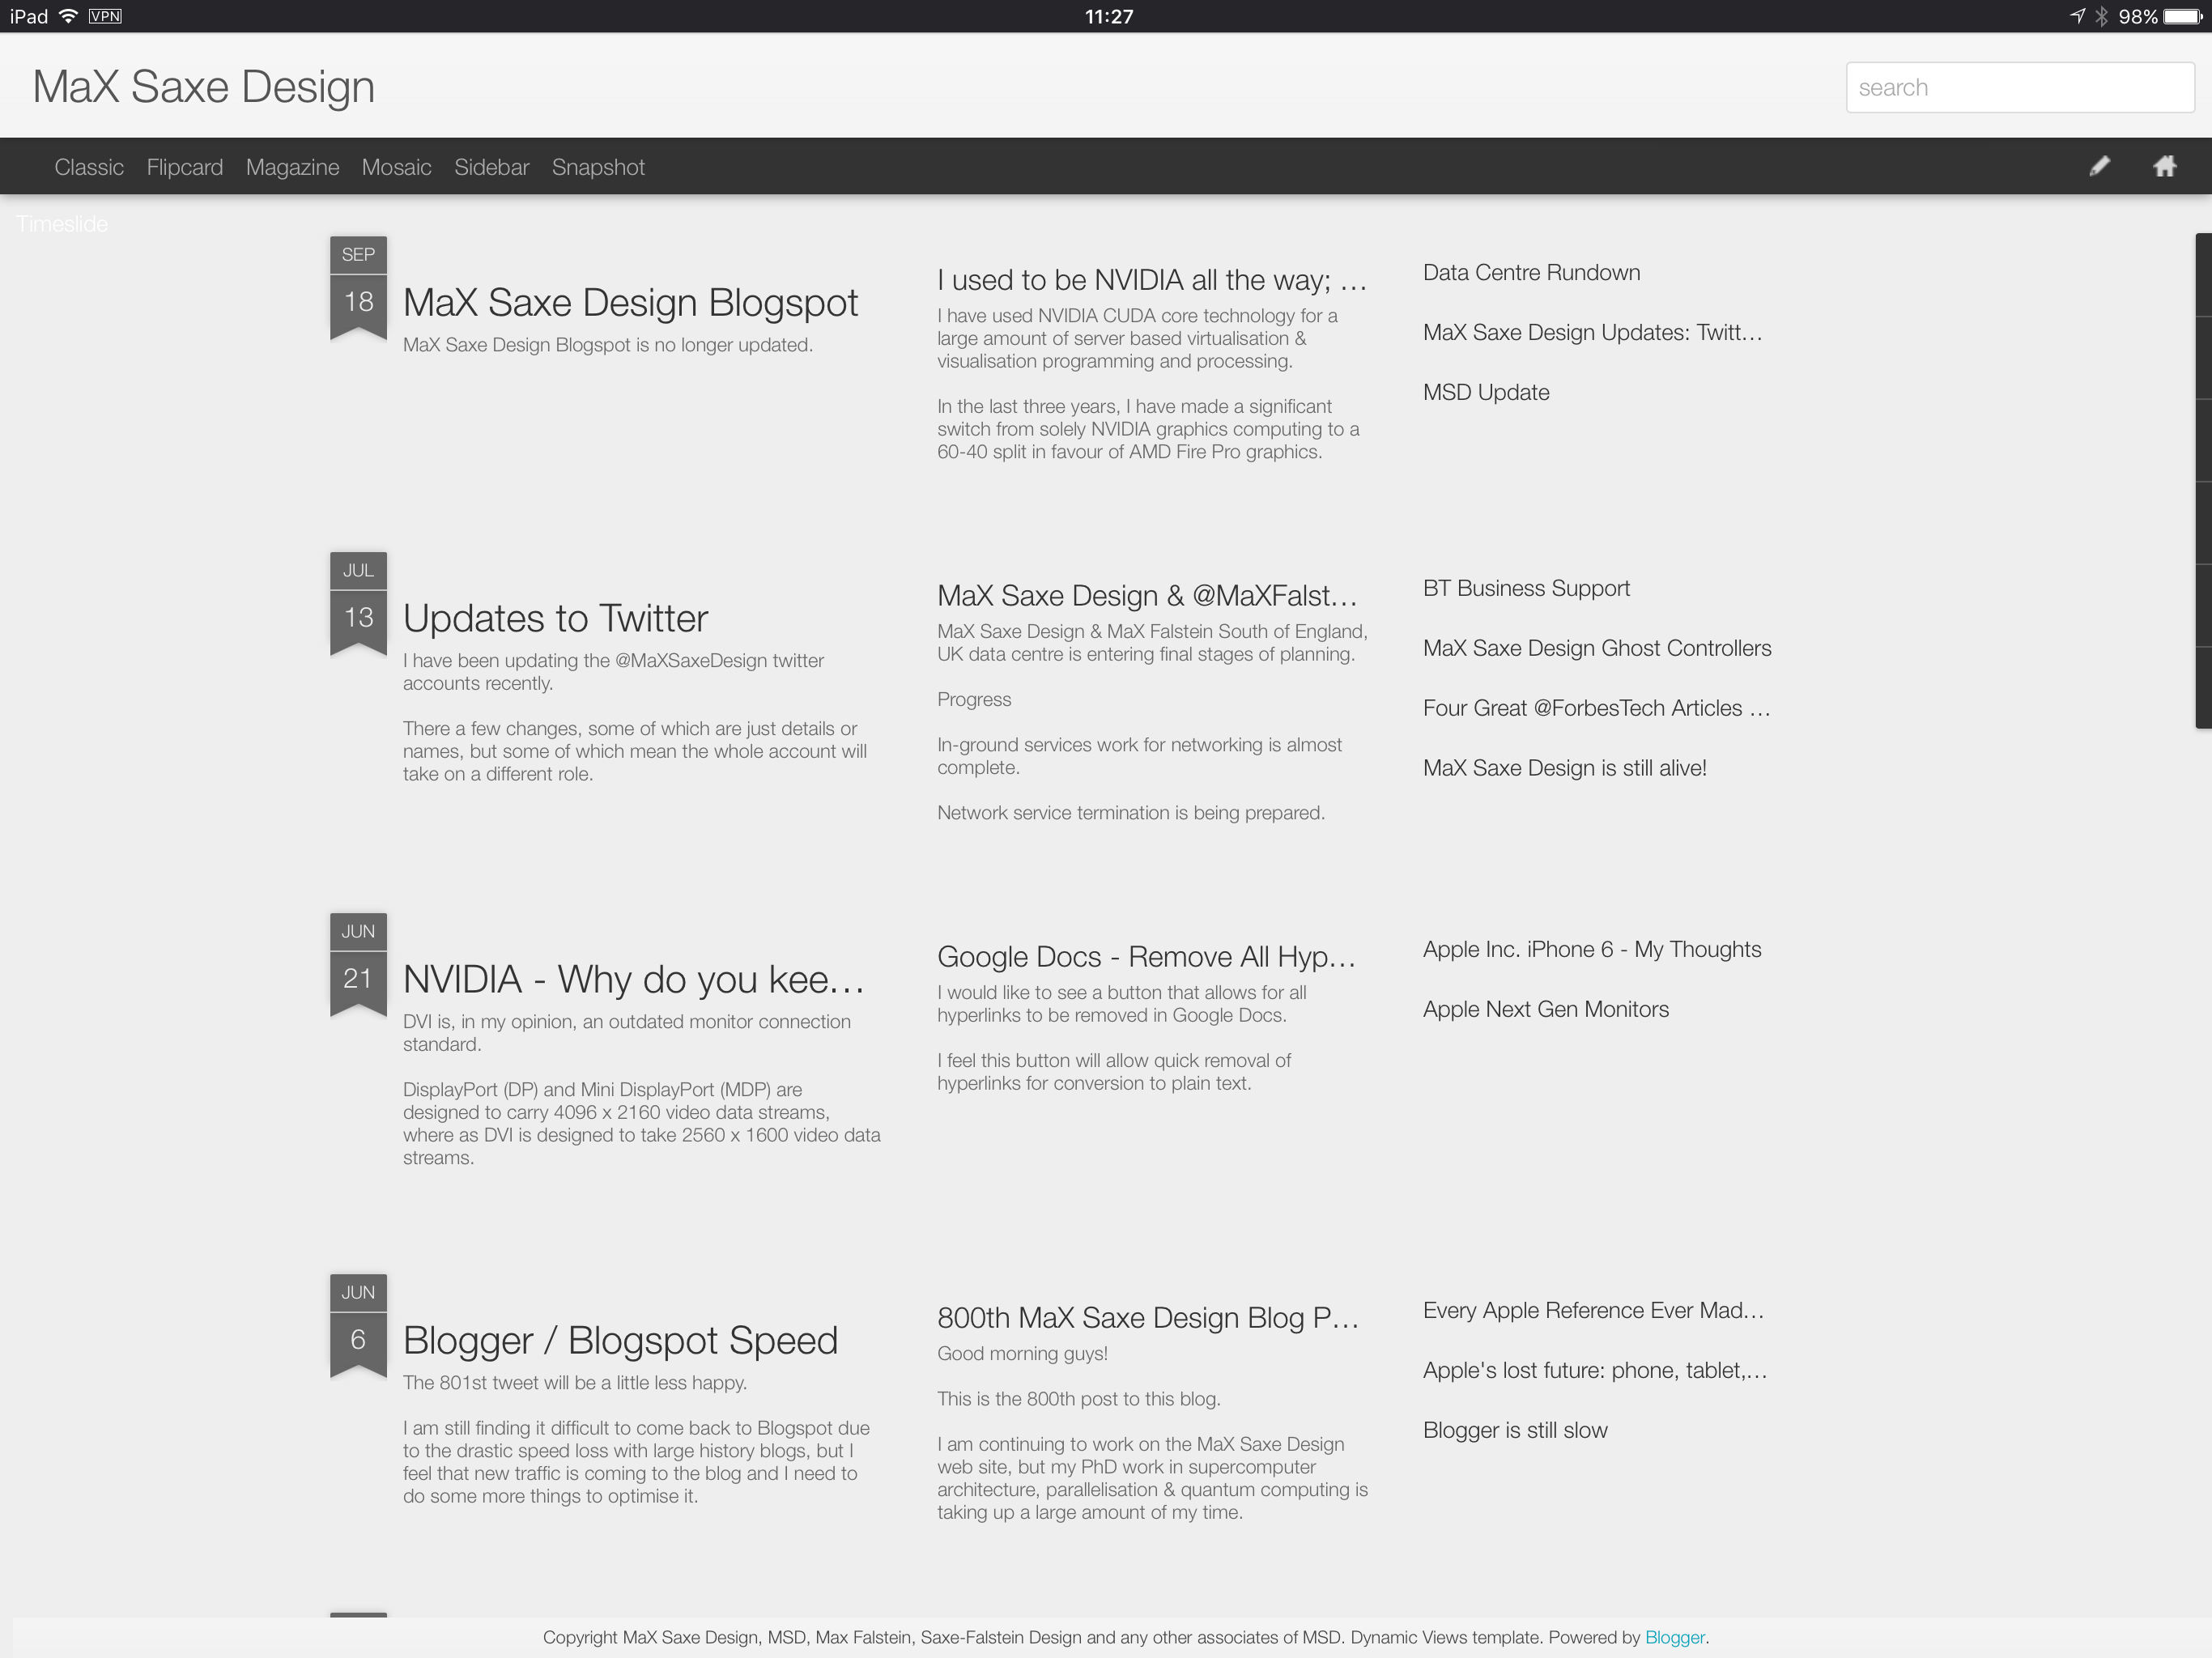 MaX Saxe Design Blogspot